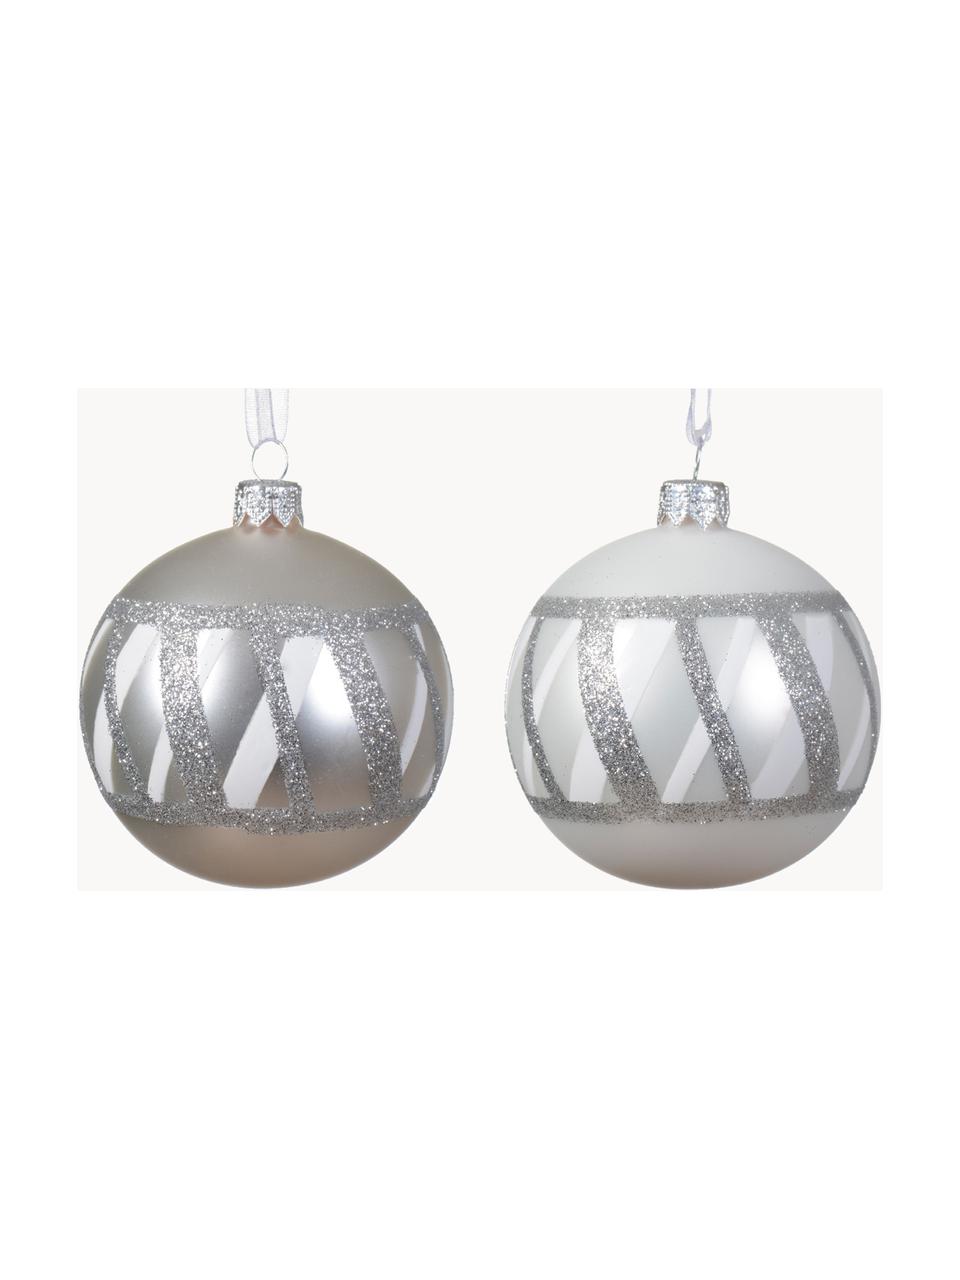 Kerstballen Karo, set van 6, Zilverkleurig, Ø 8 cm